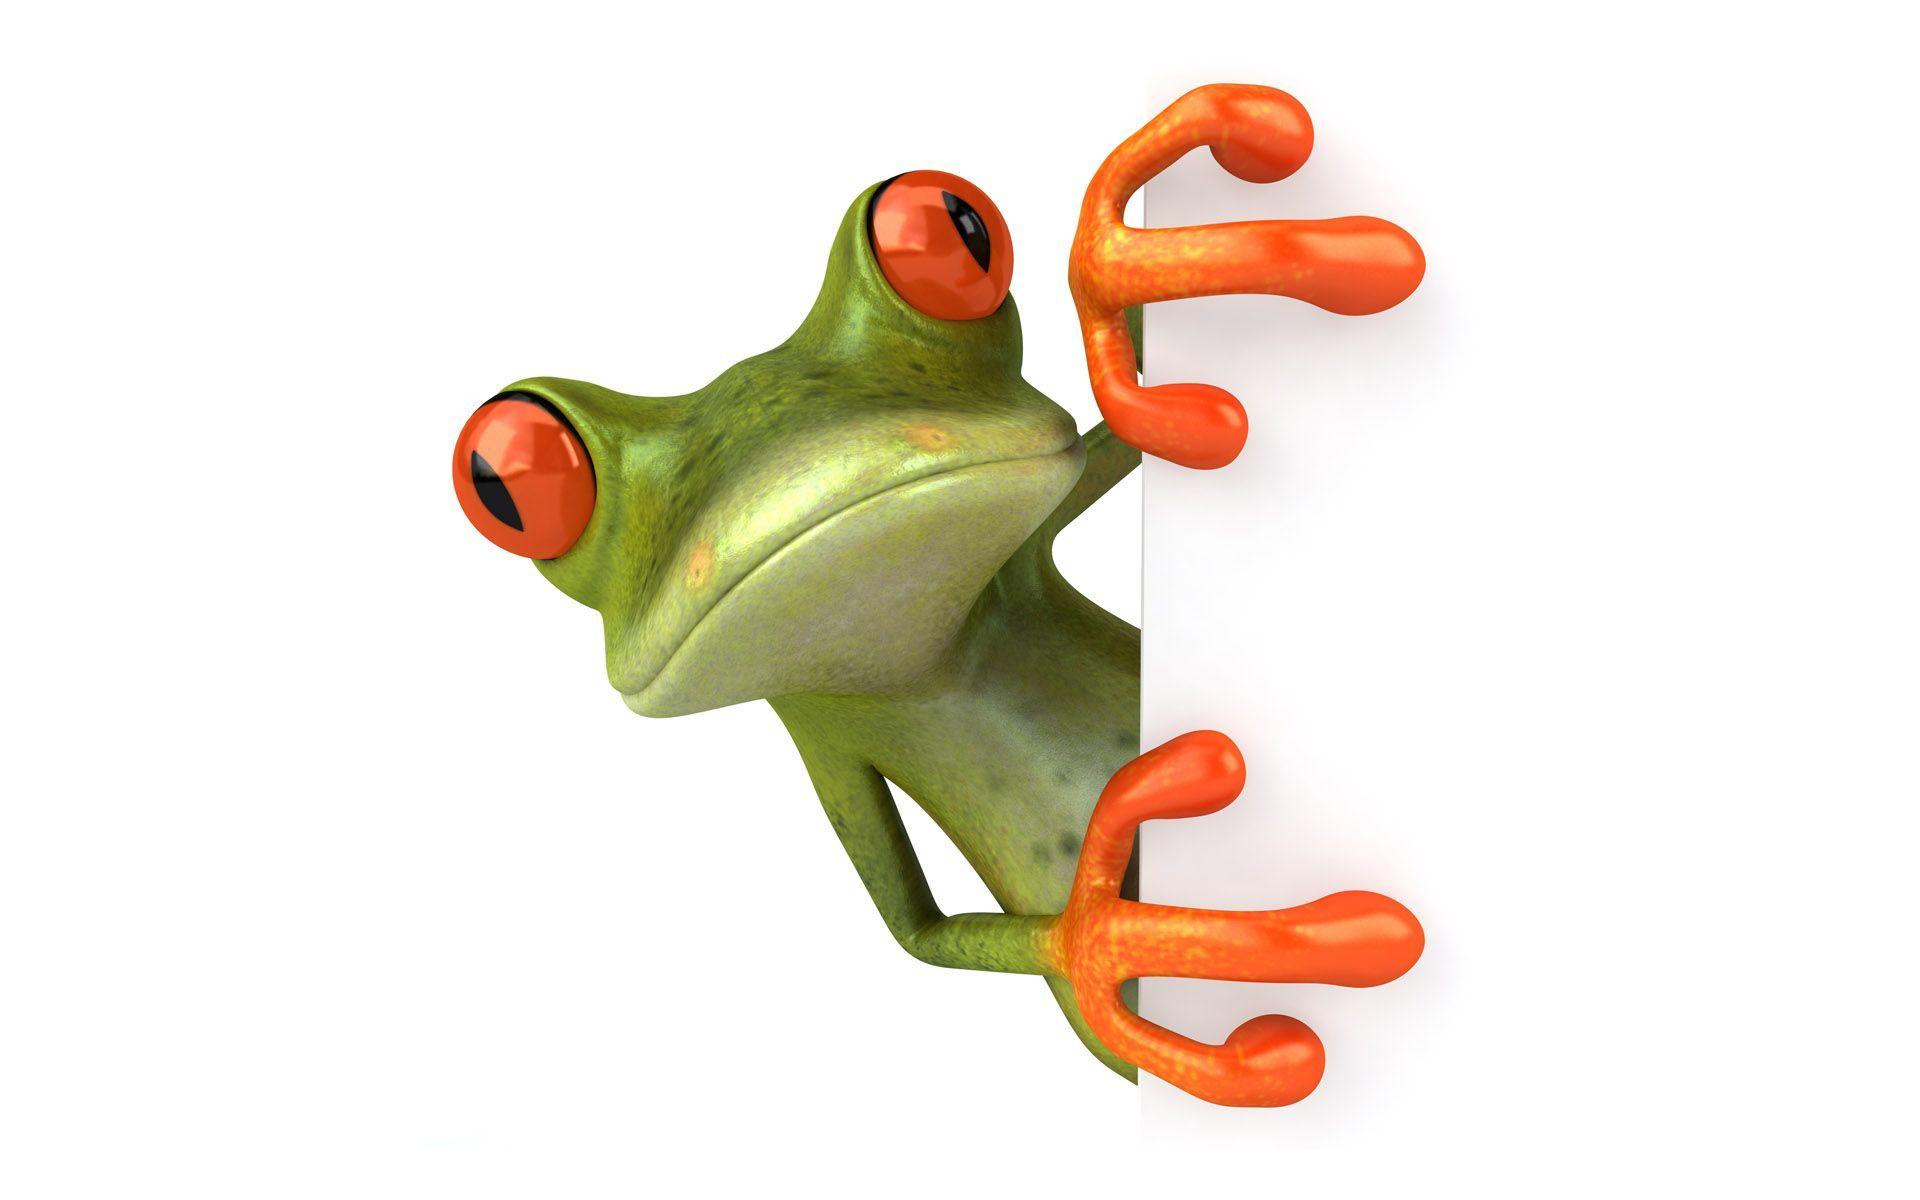 3D Wallpaper Wallpaper Cute Frog 1024x768 3D Wallpaper